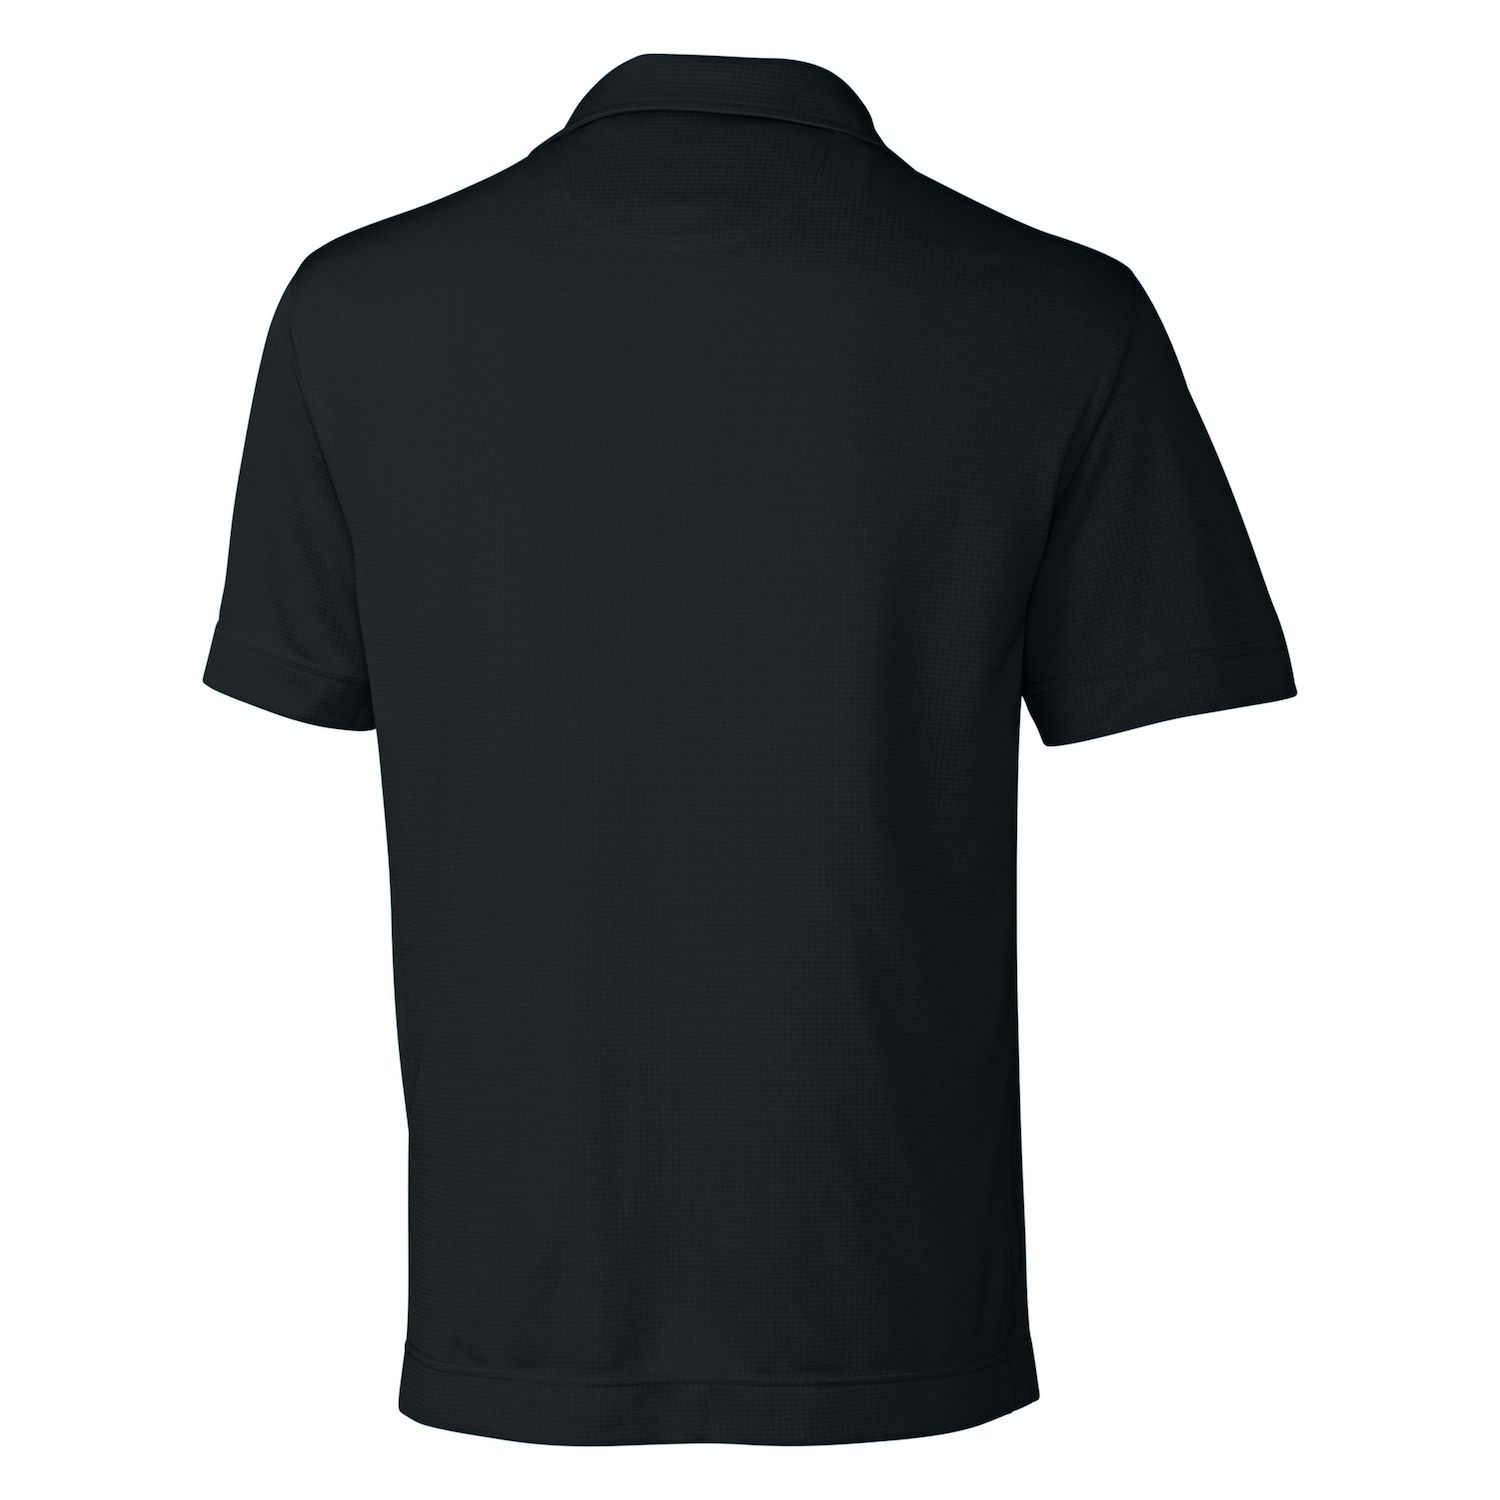 Однотонная мужская футболка-поло с текстурой CB Drytec Жанр Cutter & Buck, белый текстурированная однотонная мужская футболка поло cb drytec genre cutter